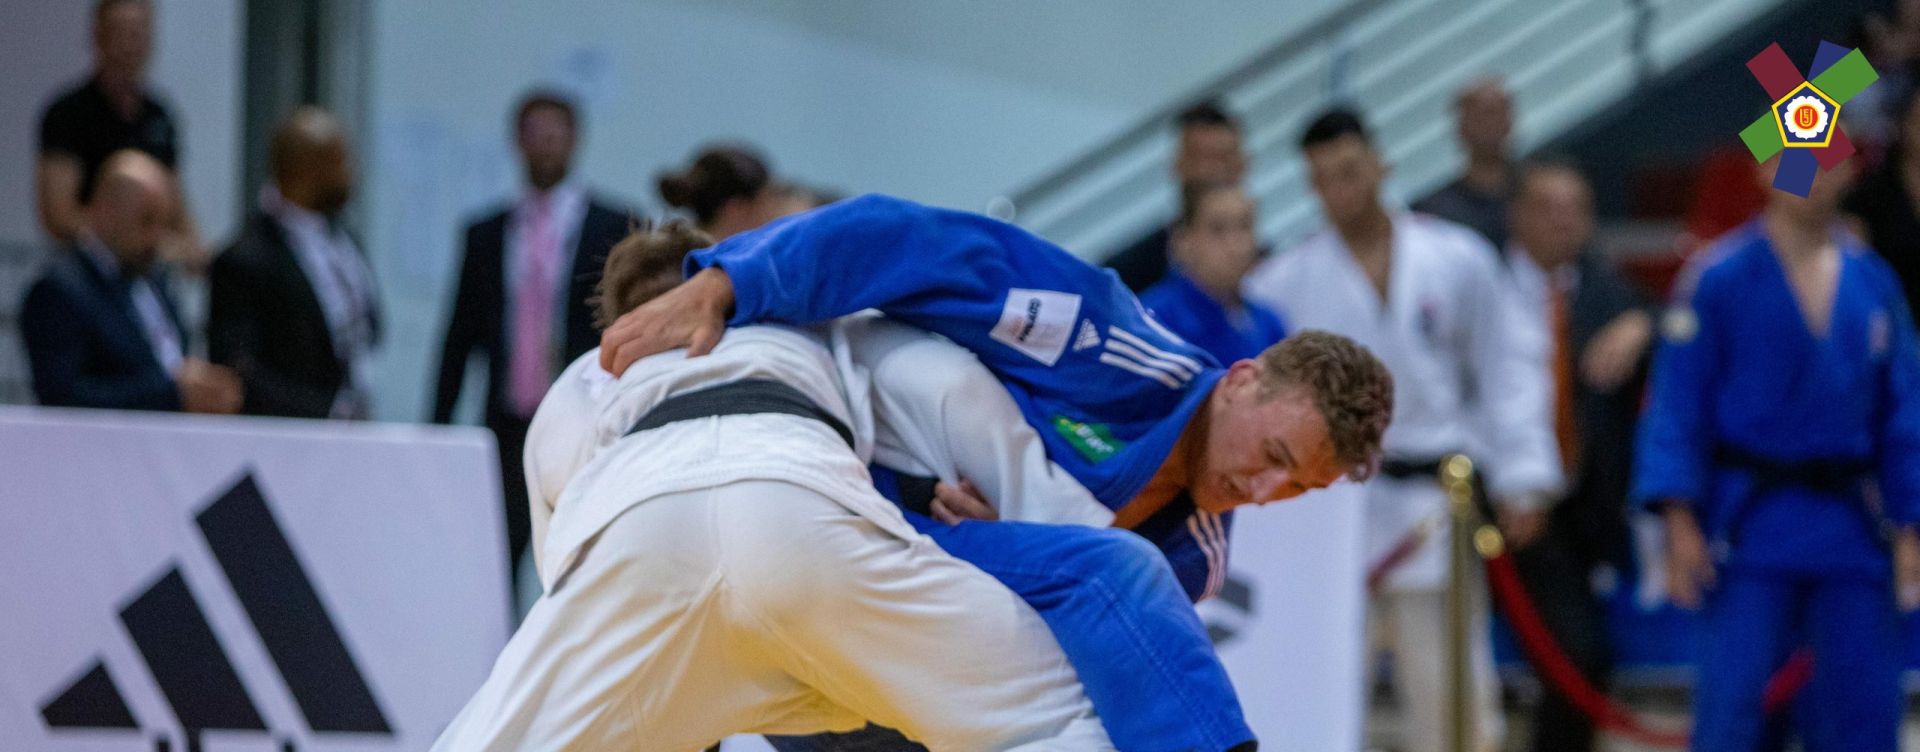 Judocy podczas walki 